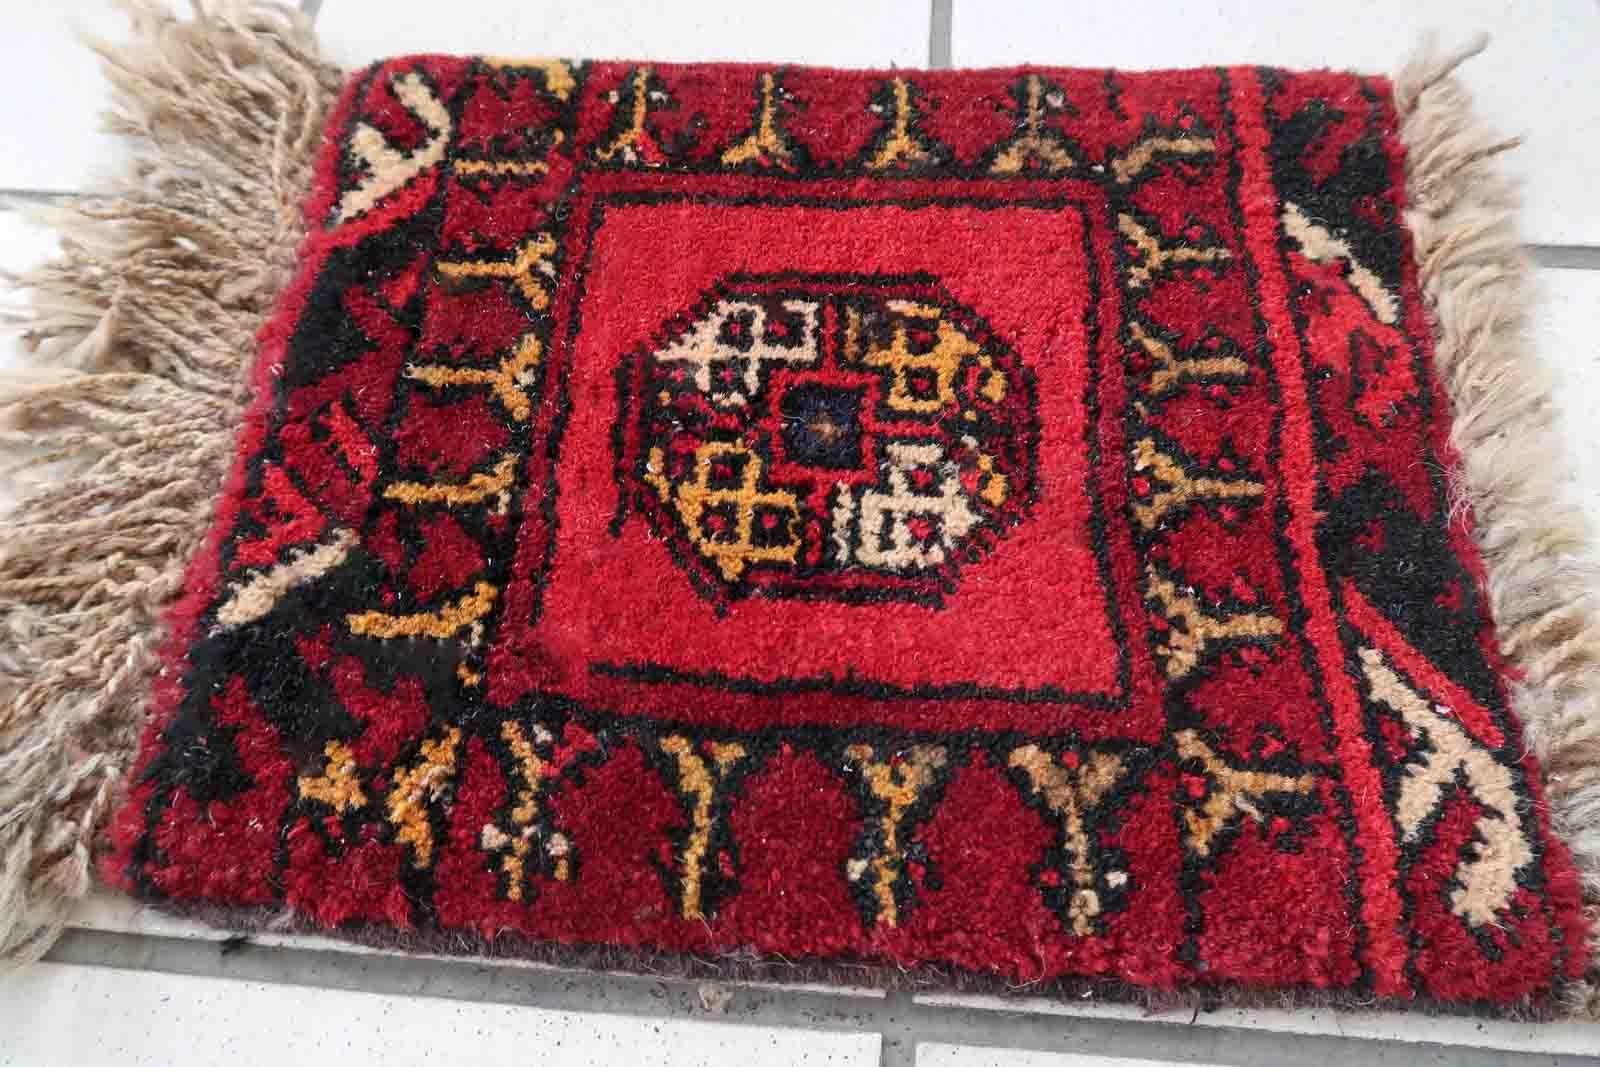 Handgefertigte afghanische Ersari-Matte in leuchtend rotem Farbton. Der Teppich stammt aus dem Ende des 20. Jahrhunderts und ist in gutem Originalzustand. Er kann als Puppenhausteppich verwendet werden.

-Zustand: original gut,

-Umgebung: